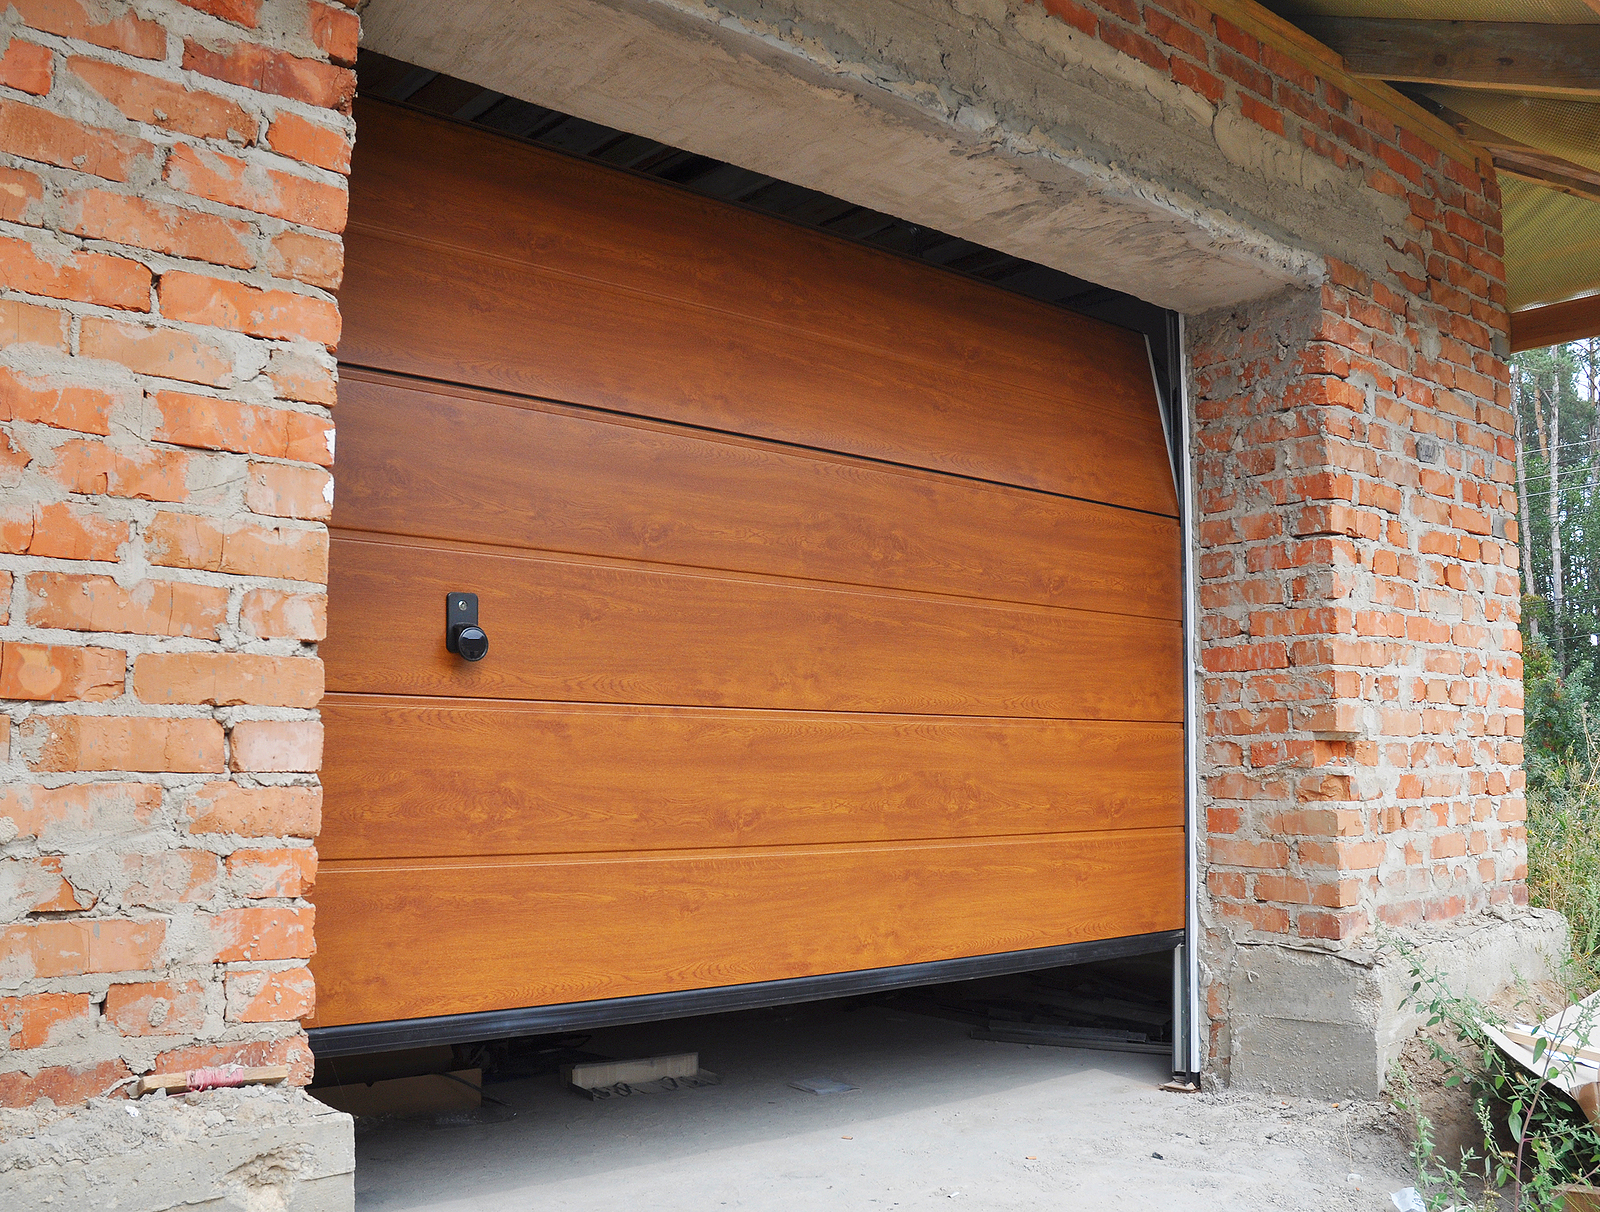 custom garage doors